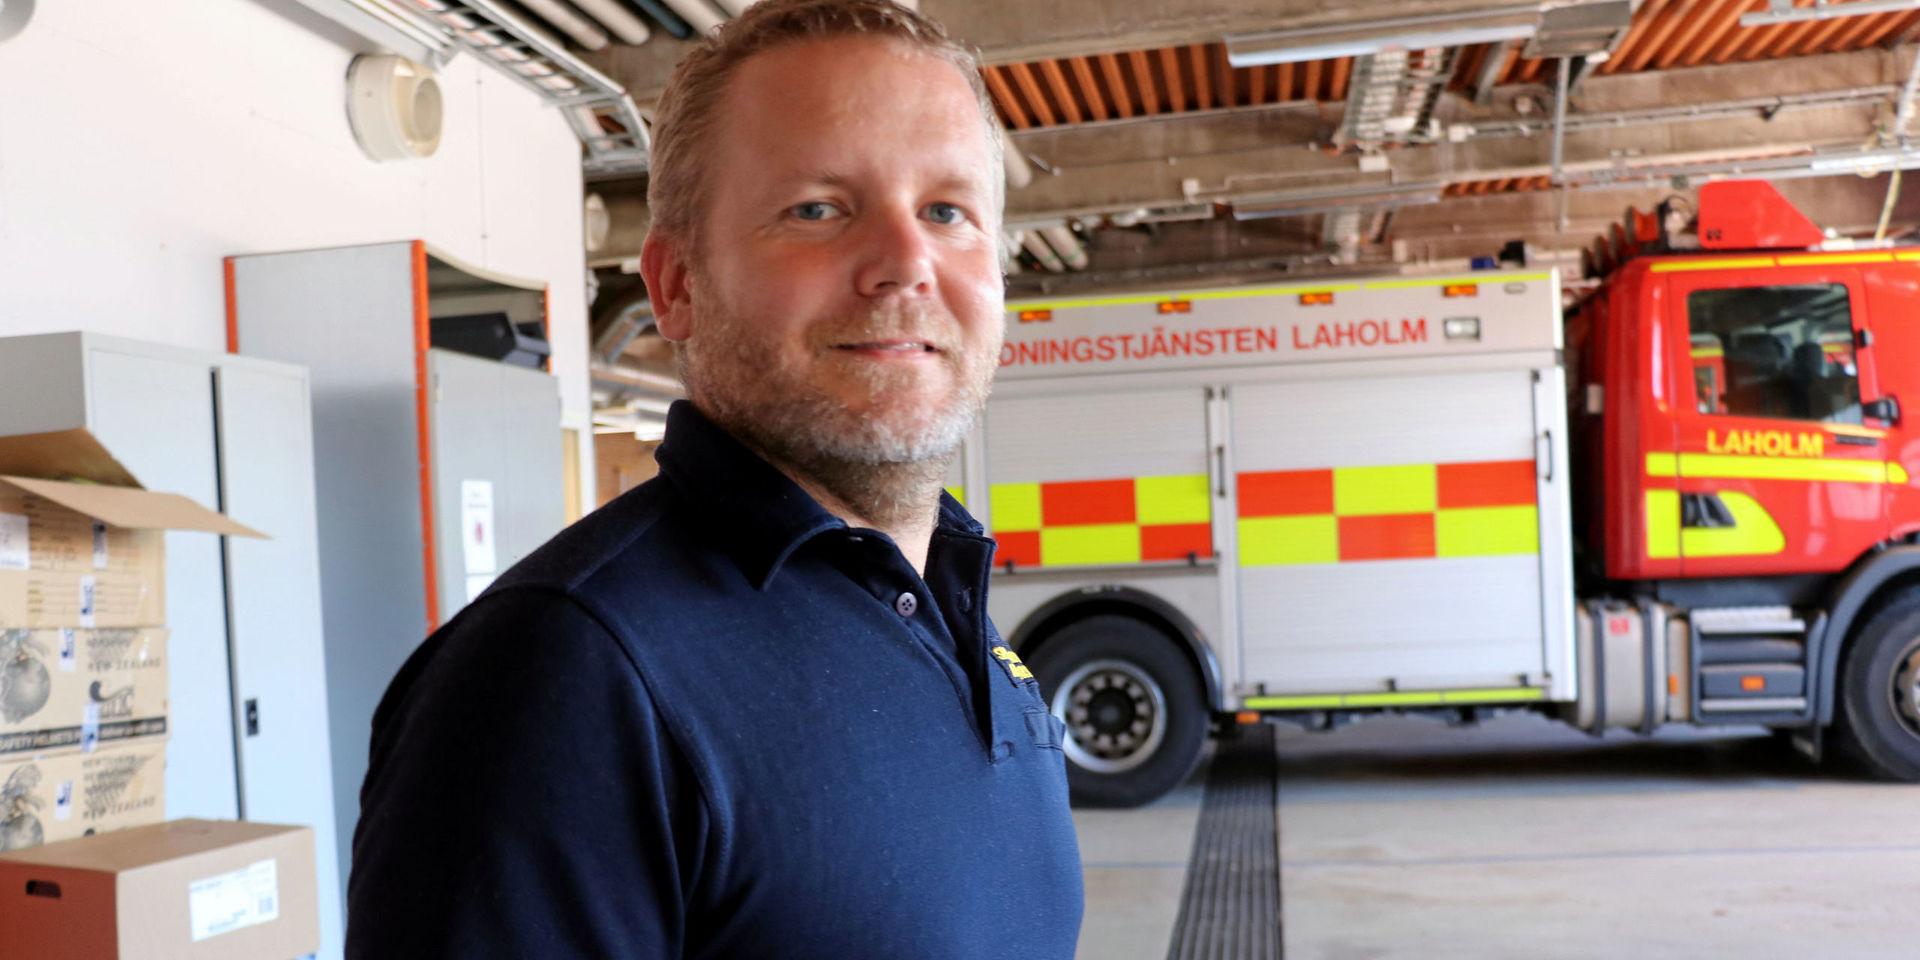 Andreas Nilsson, räddningschef i Laholm, ryckte ut från Veinge. Han var först att upptäcka själva brandplatsen på campusområdet.